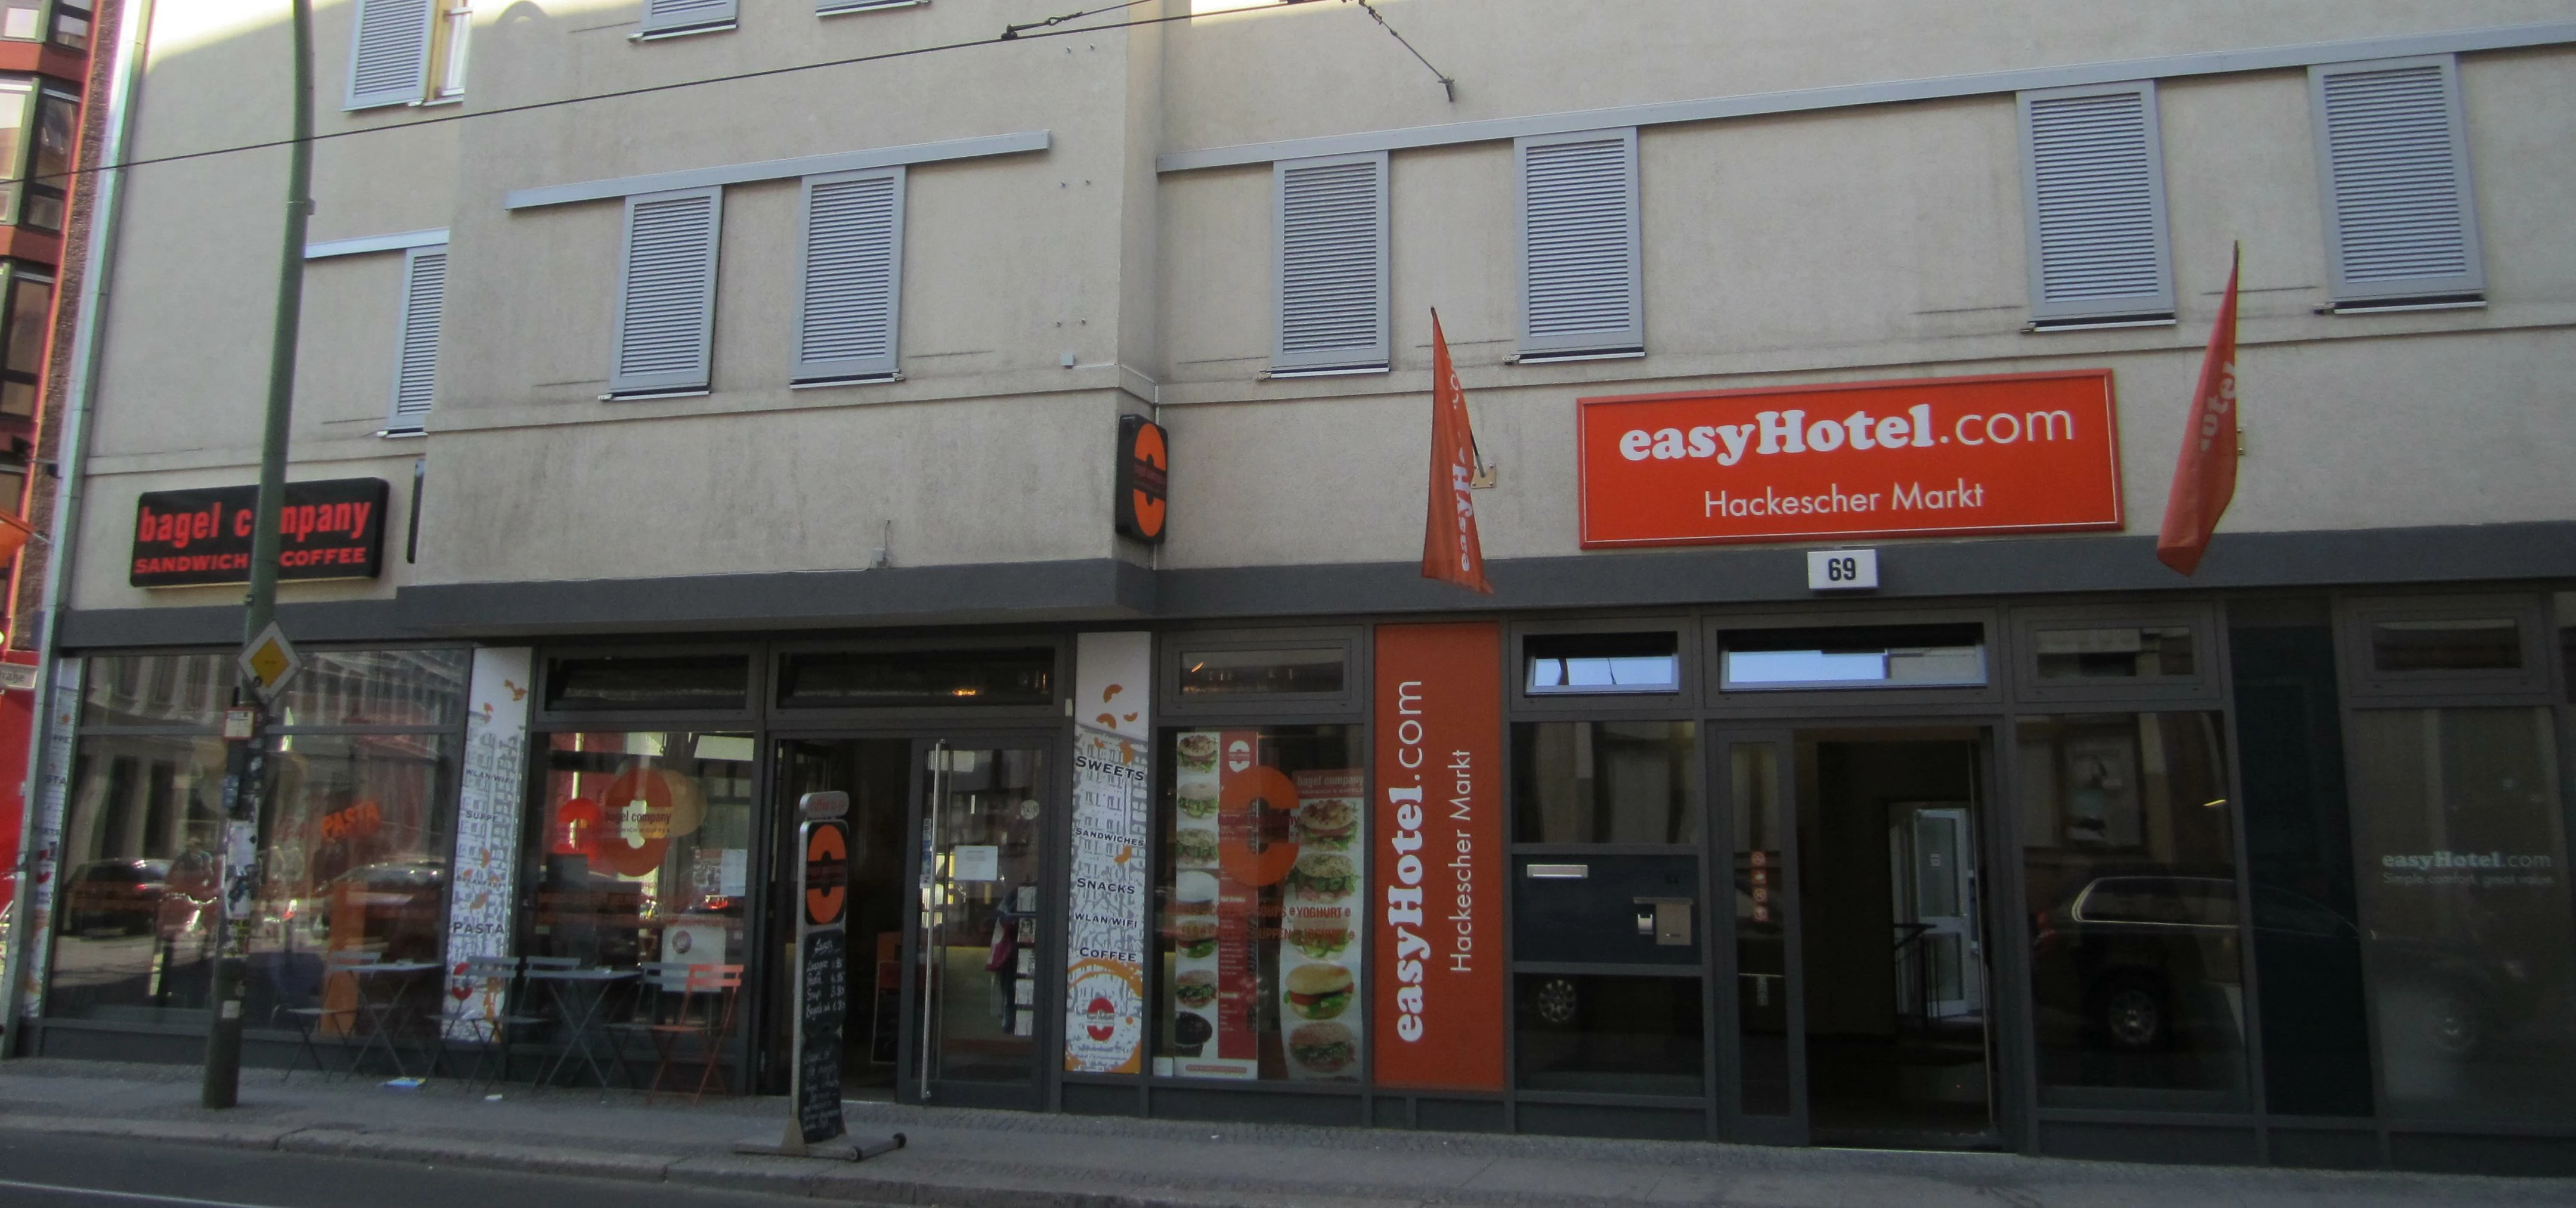 easyHotel in Berlin